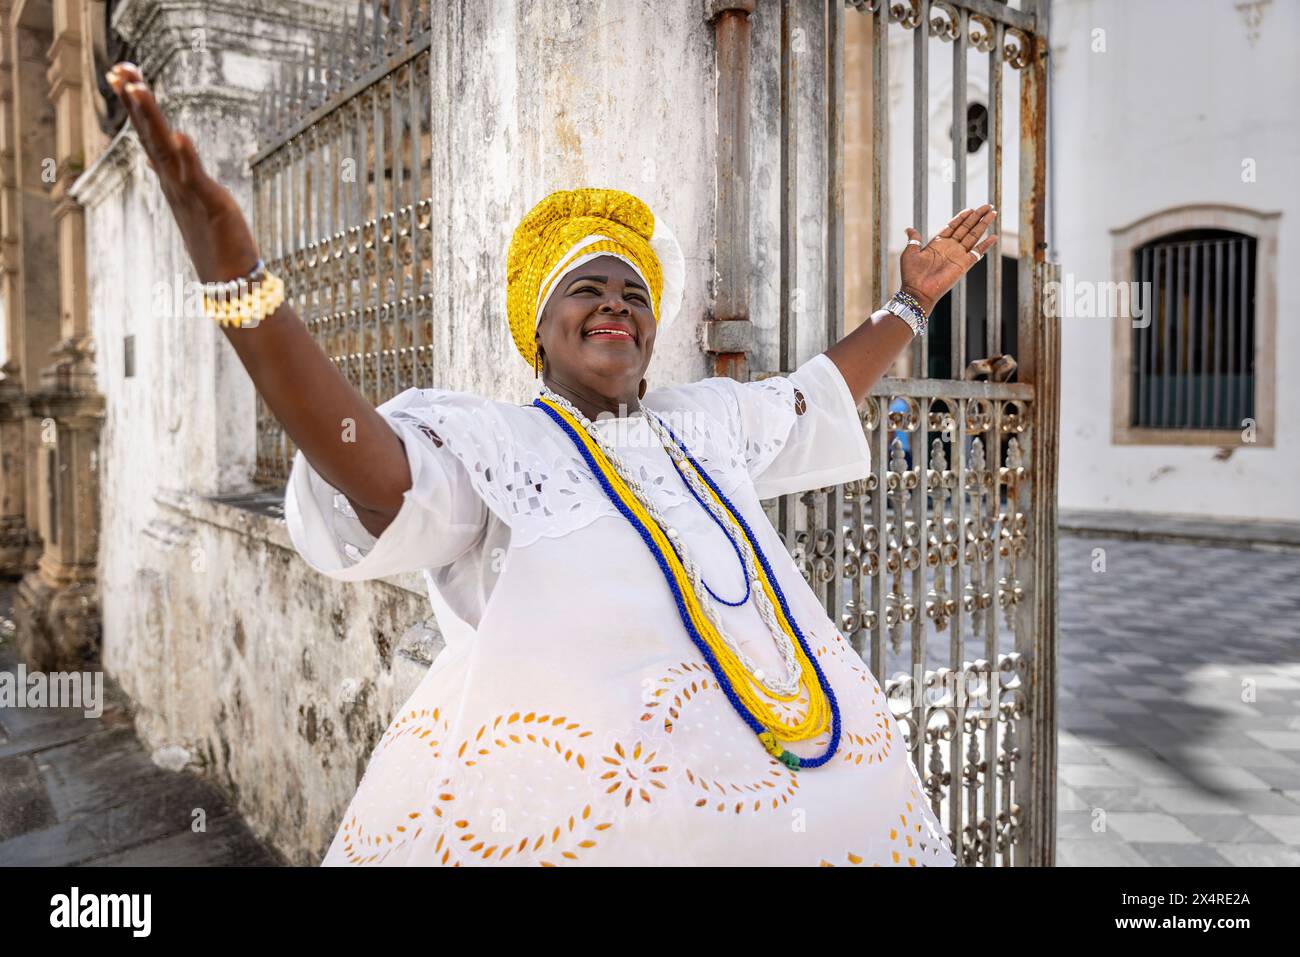 Porträt einer bahianischen Frau in traditioneller baiana-Kleidung in der Kirche des Dritten Ordens des Heiligen Franziskus, Bezirk Pelourinho, Salvador, Bahia, Brasilien Stockfoto